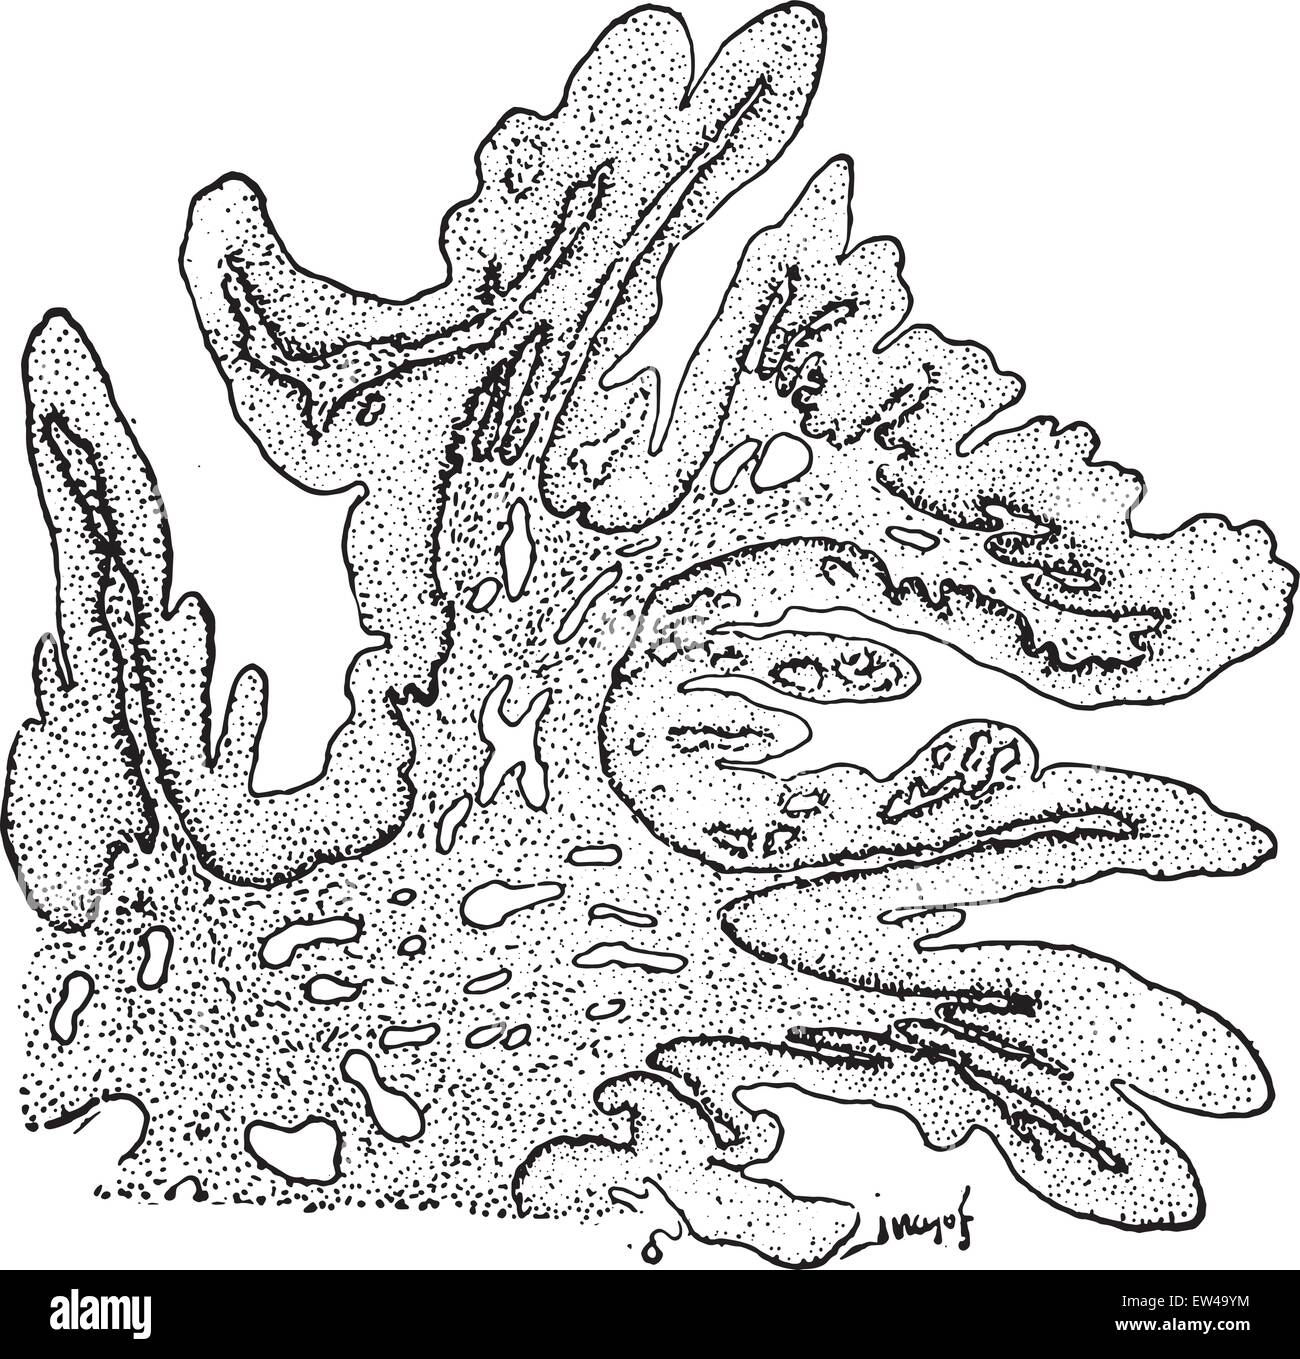 Papilloma mit Tendenz zur Zotten Bildung, graviert Vintage Illustration. Stock Vektor